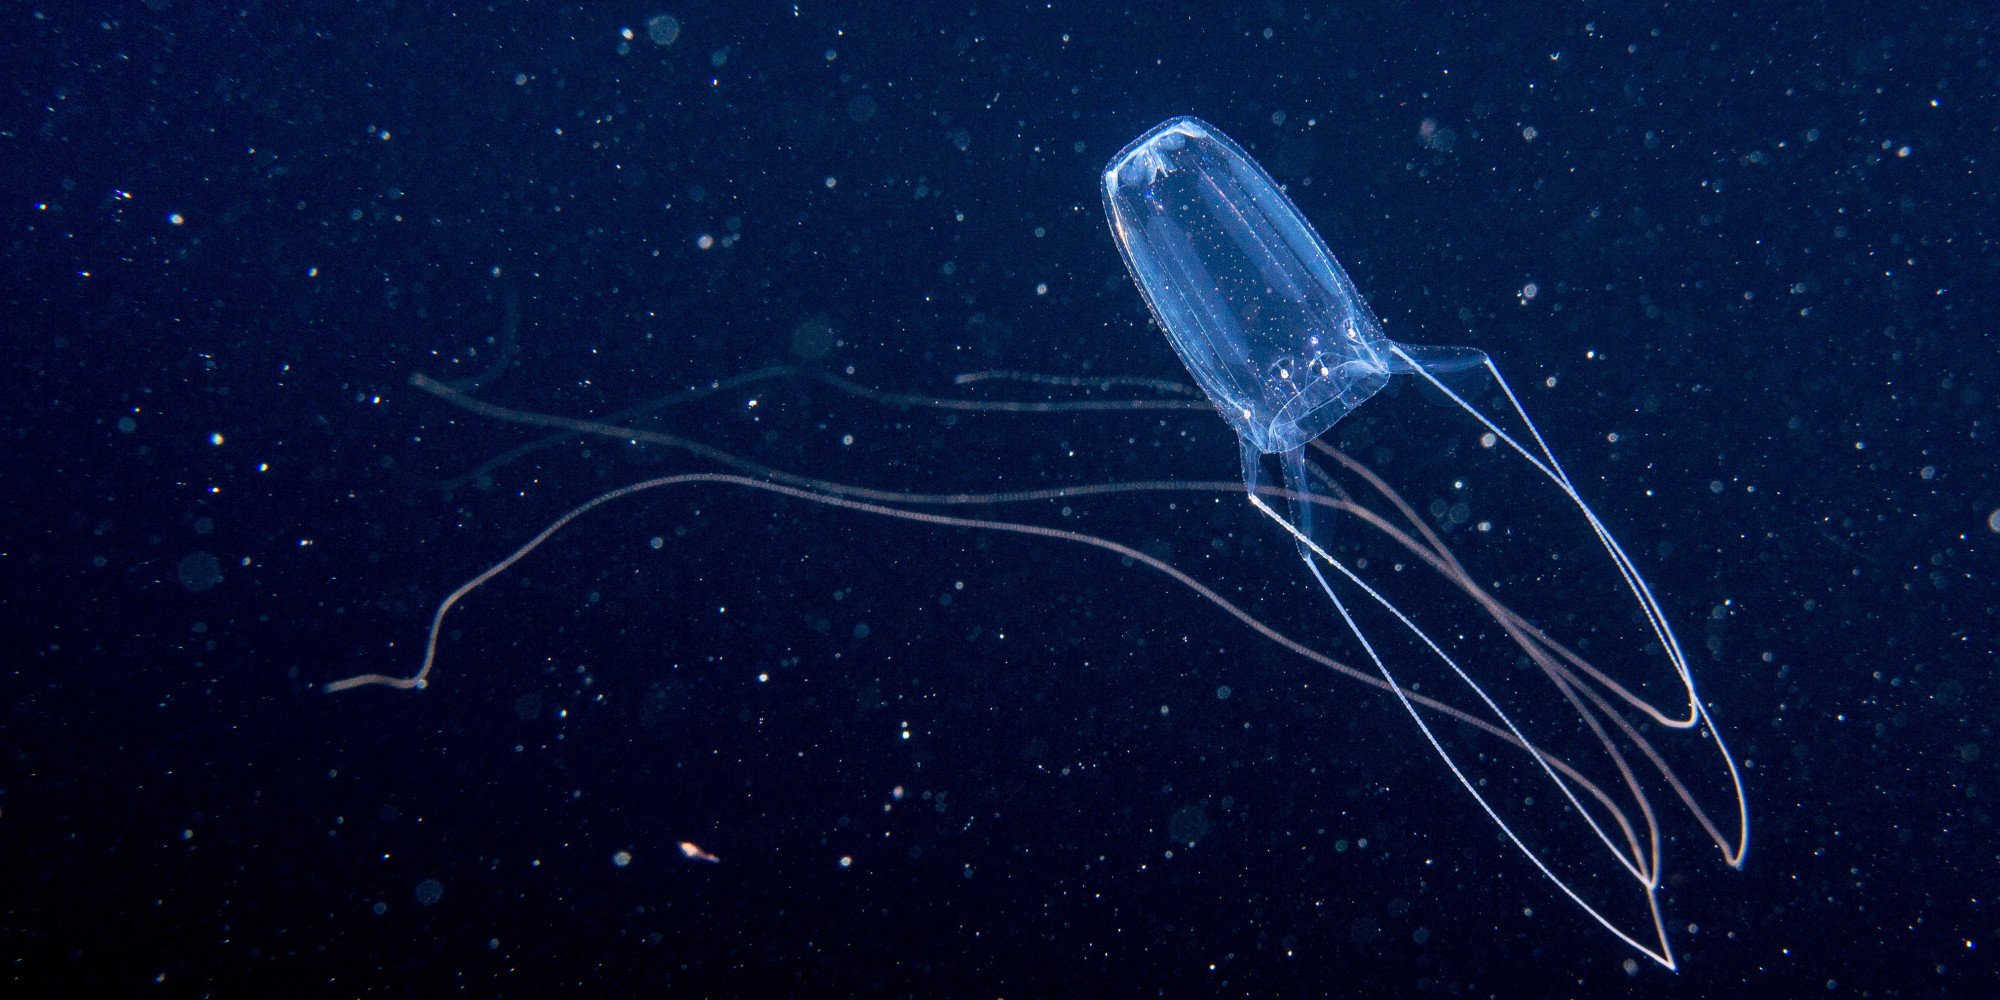 ядовитые медузы австралии